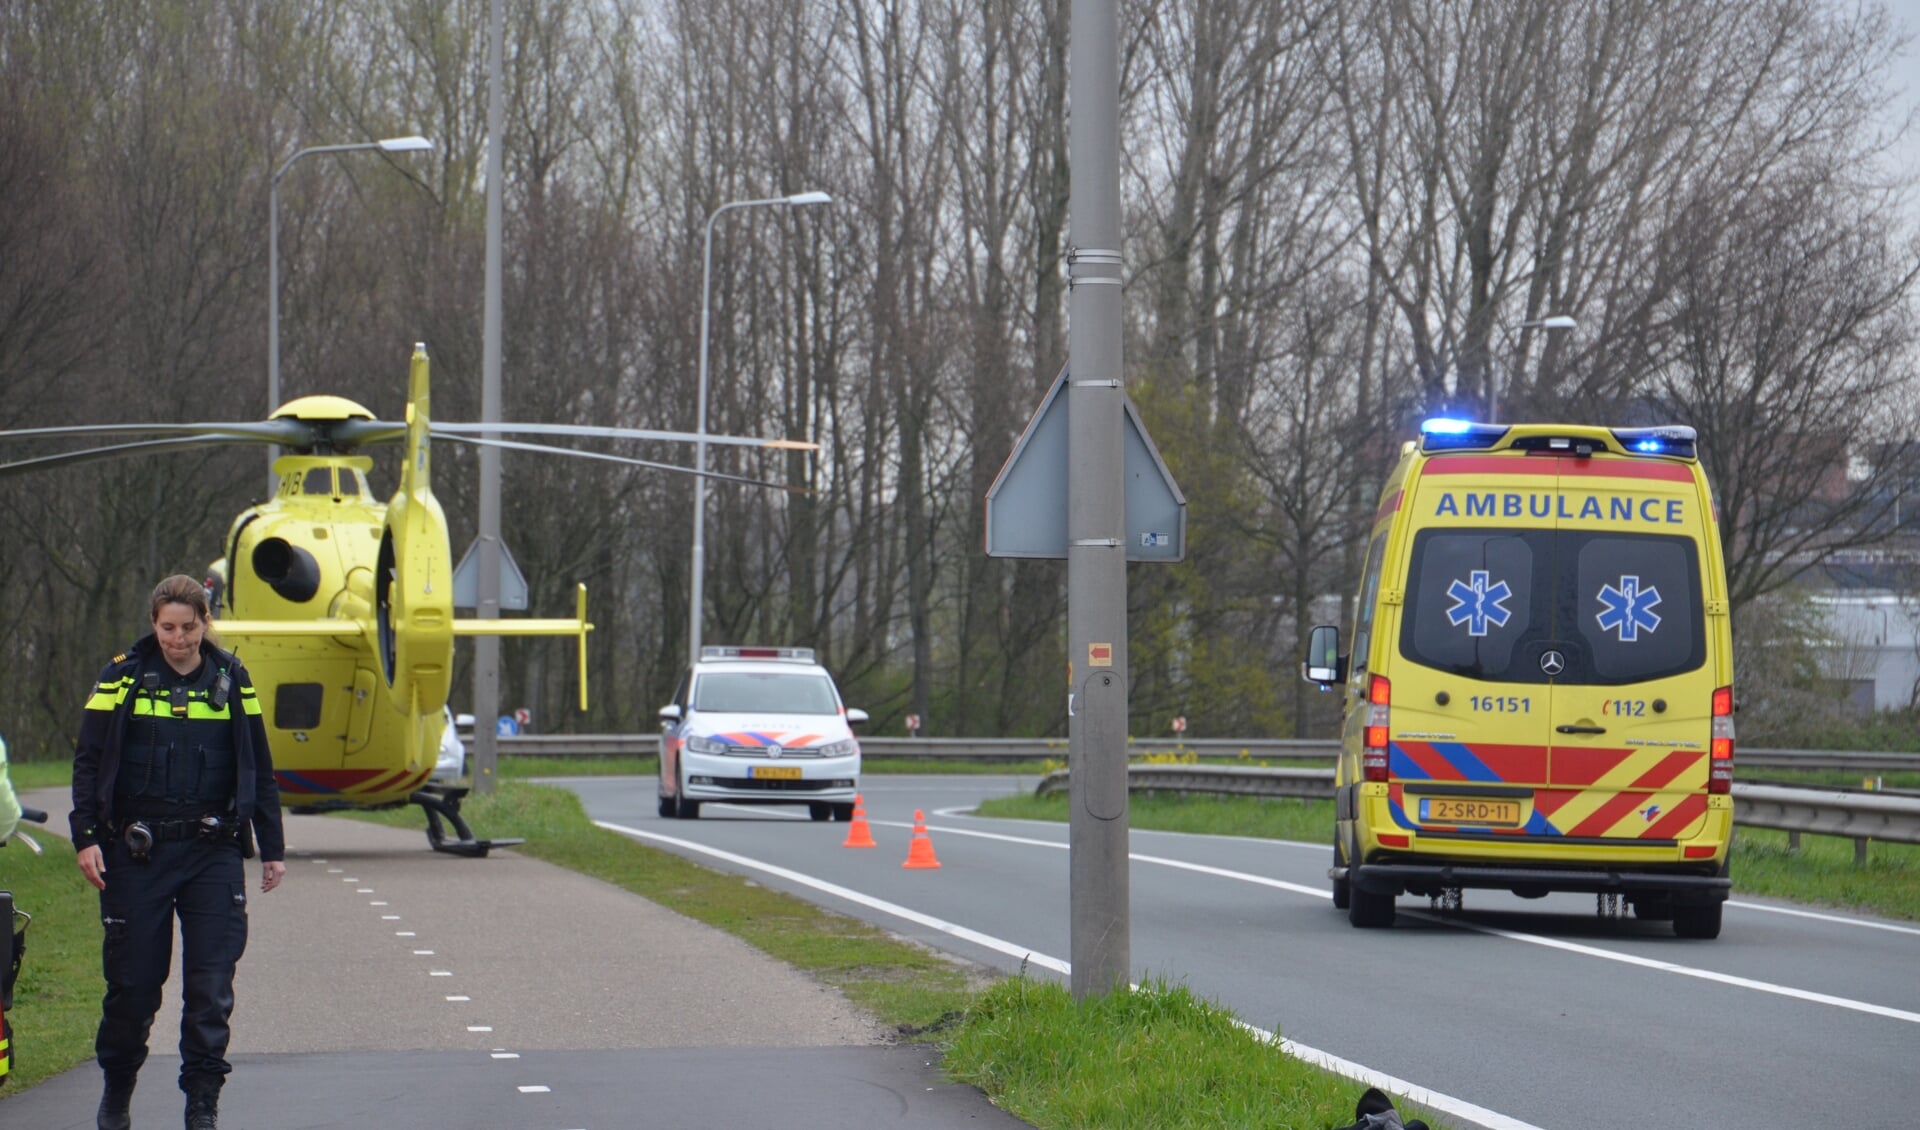 De politie trof zondagochtend een zwaargewonde man aan bij de Coenecoopbrug (Rob de Jong/112hm.nl)